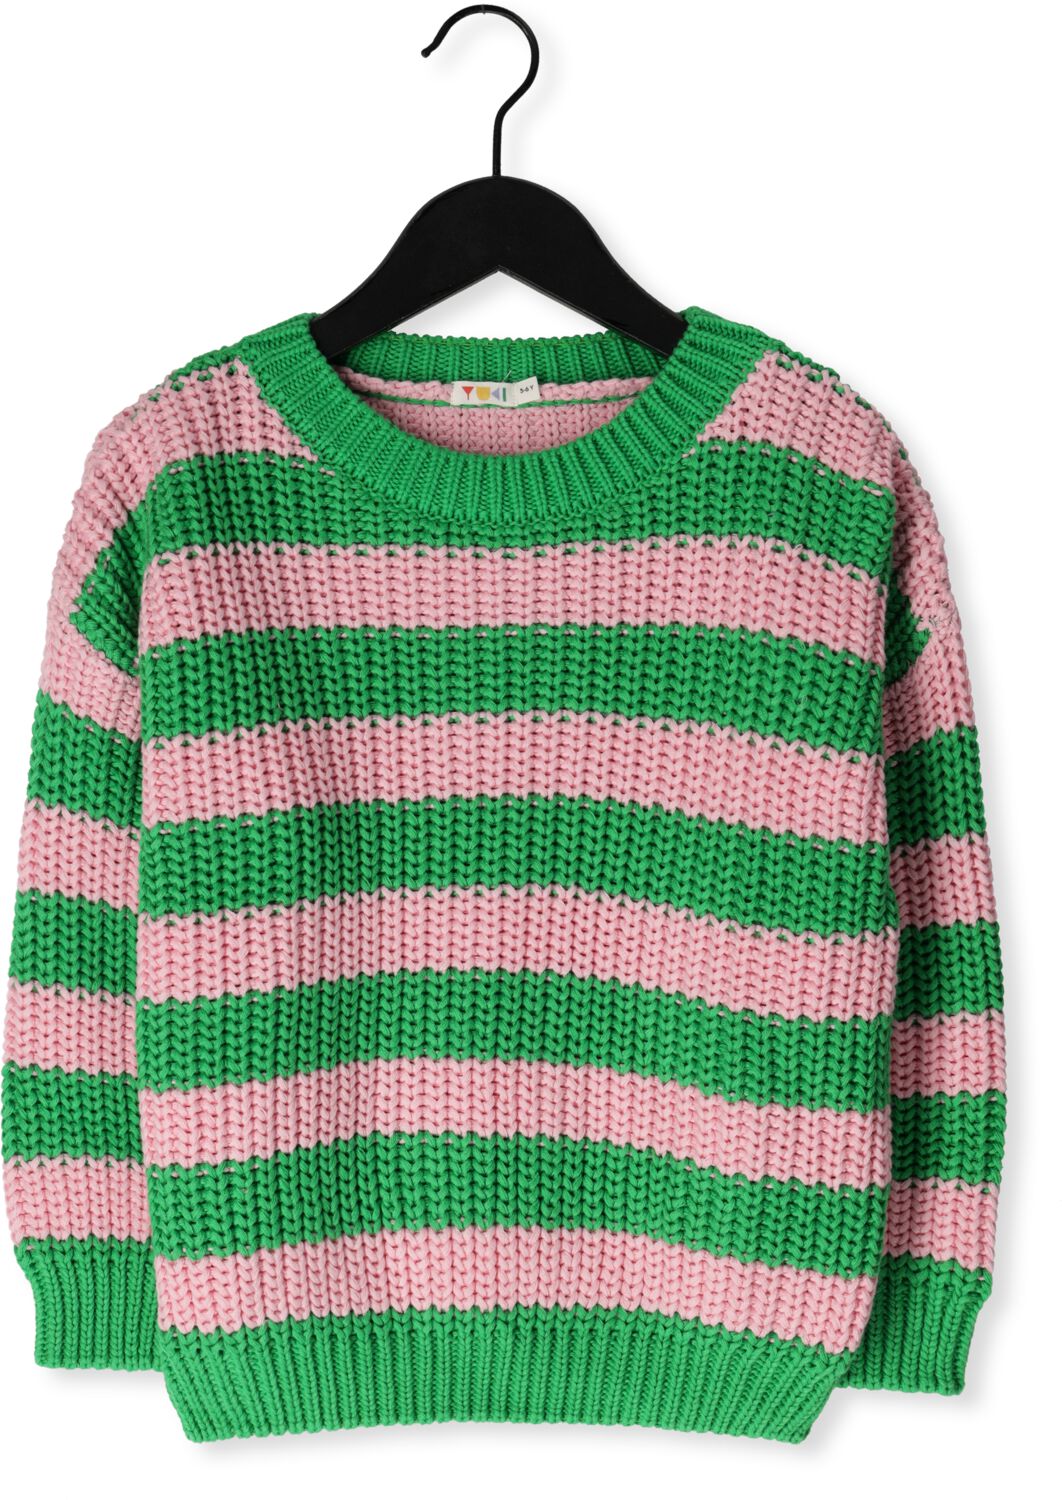 YUKI KIDSWEAR Meisjes Truien & Vesten Chunky Knitted Sweater Groen